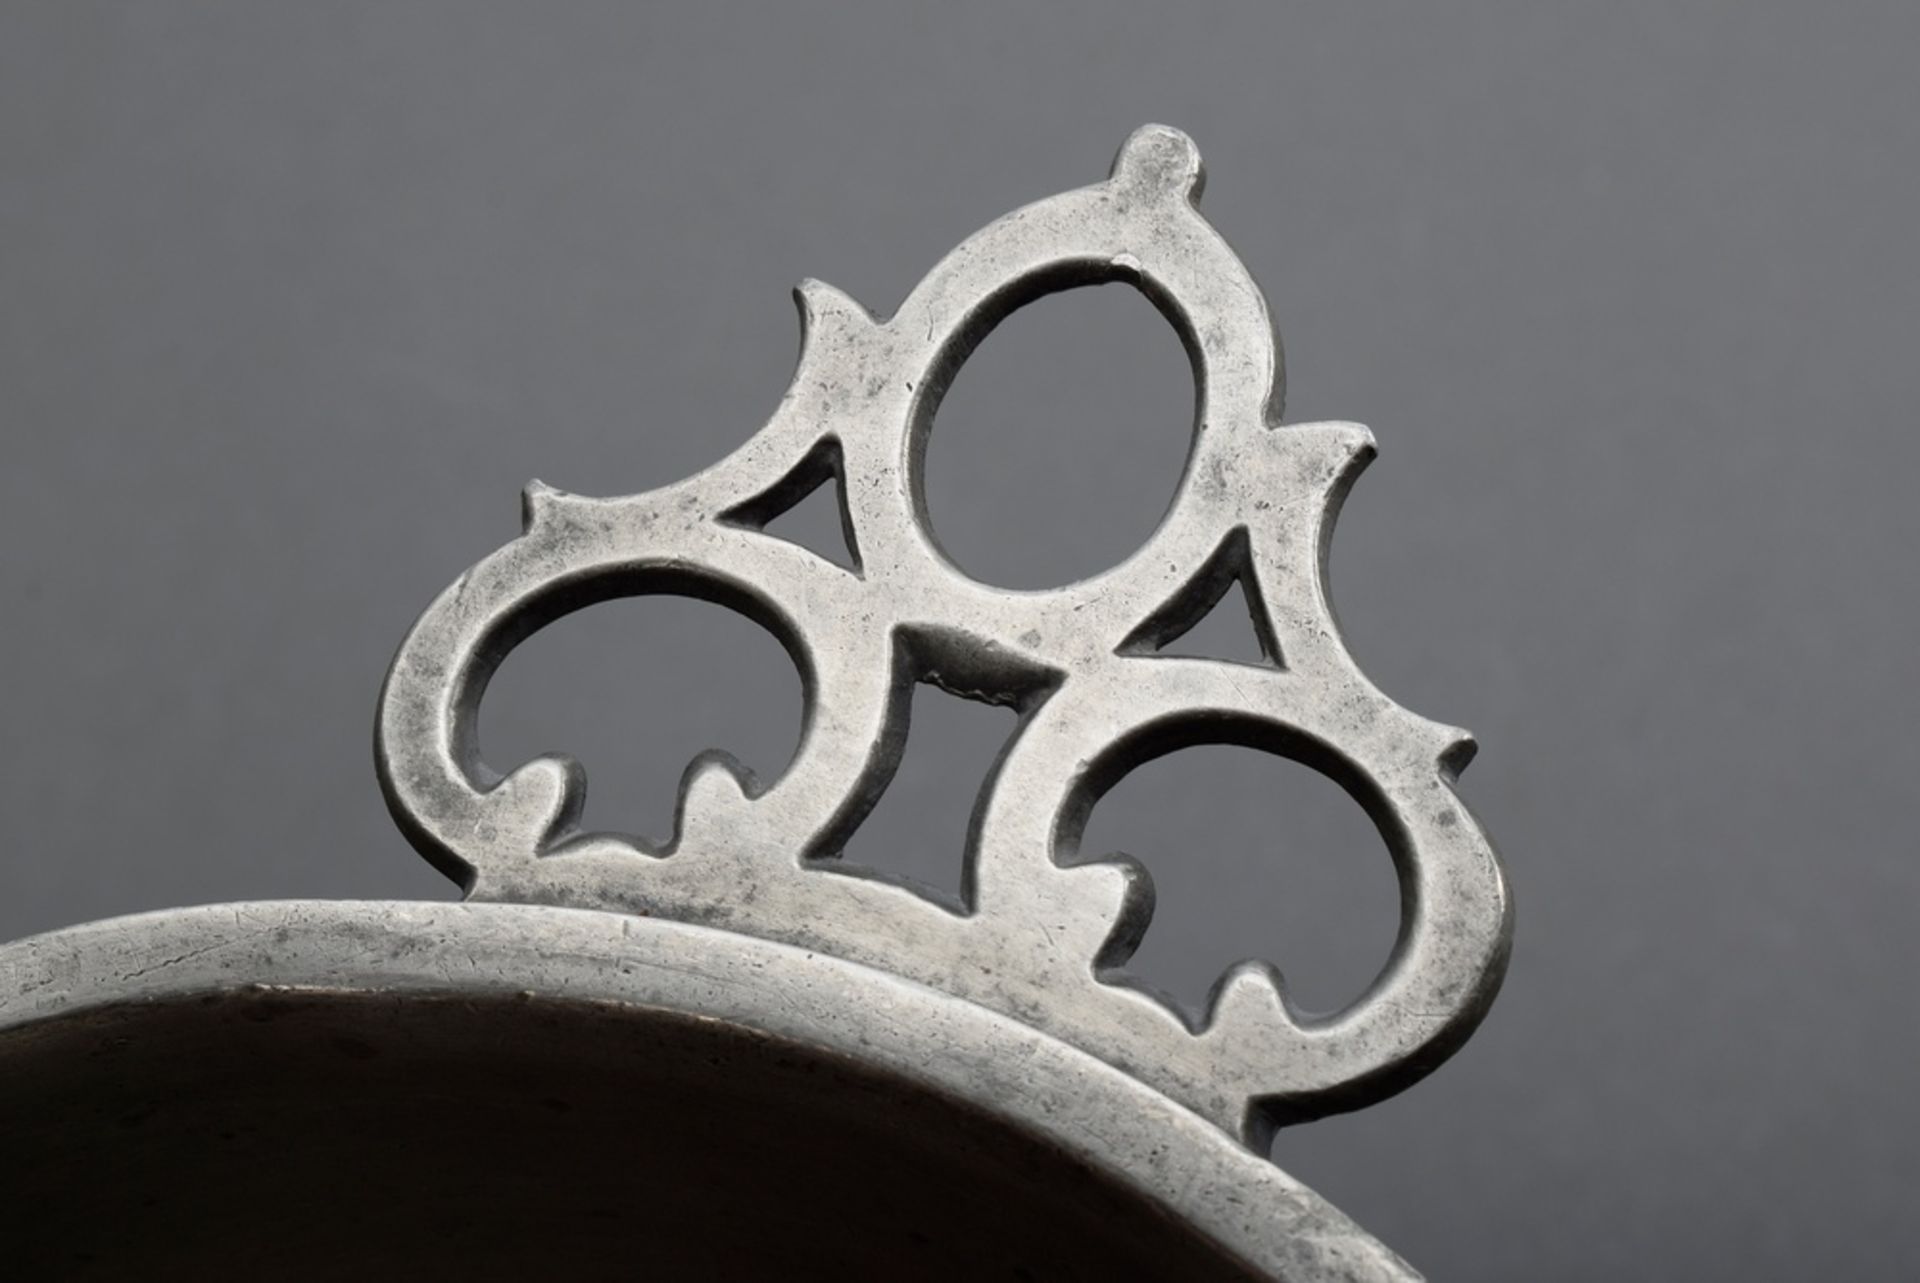 2 Diverse Zinn Ohrenschalen mit ornamentalen Henkeln und Monogrammgravuren "J.K.F 1825" und "MGGB", - Bild 6 aus 6